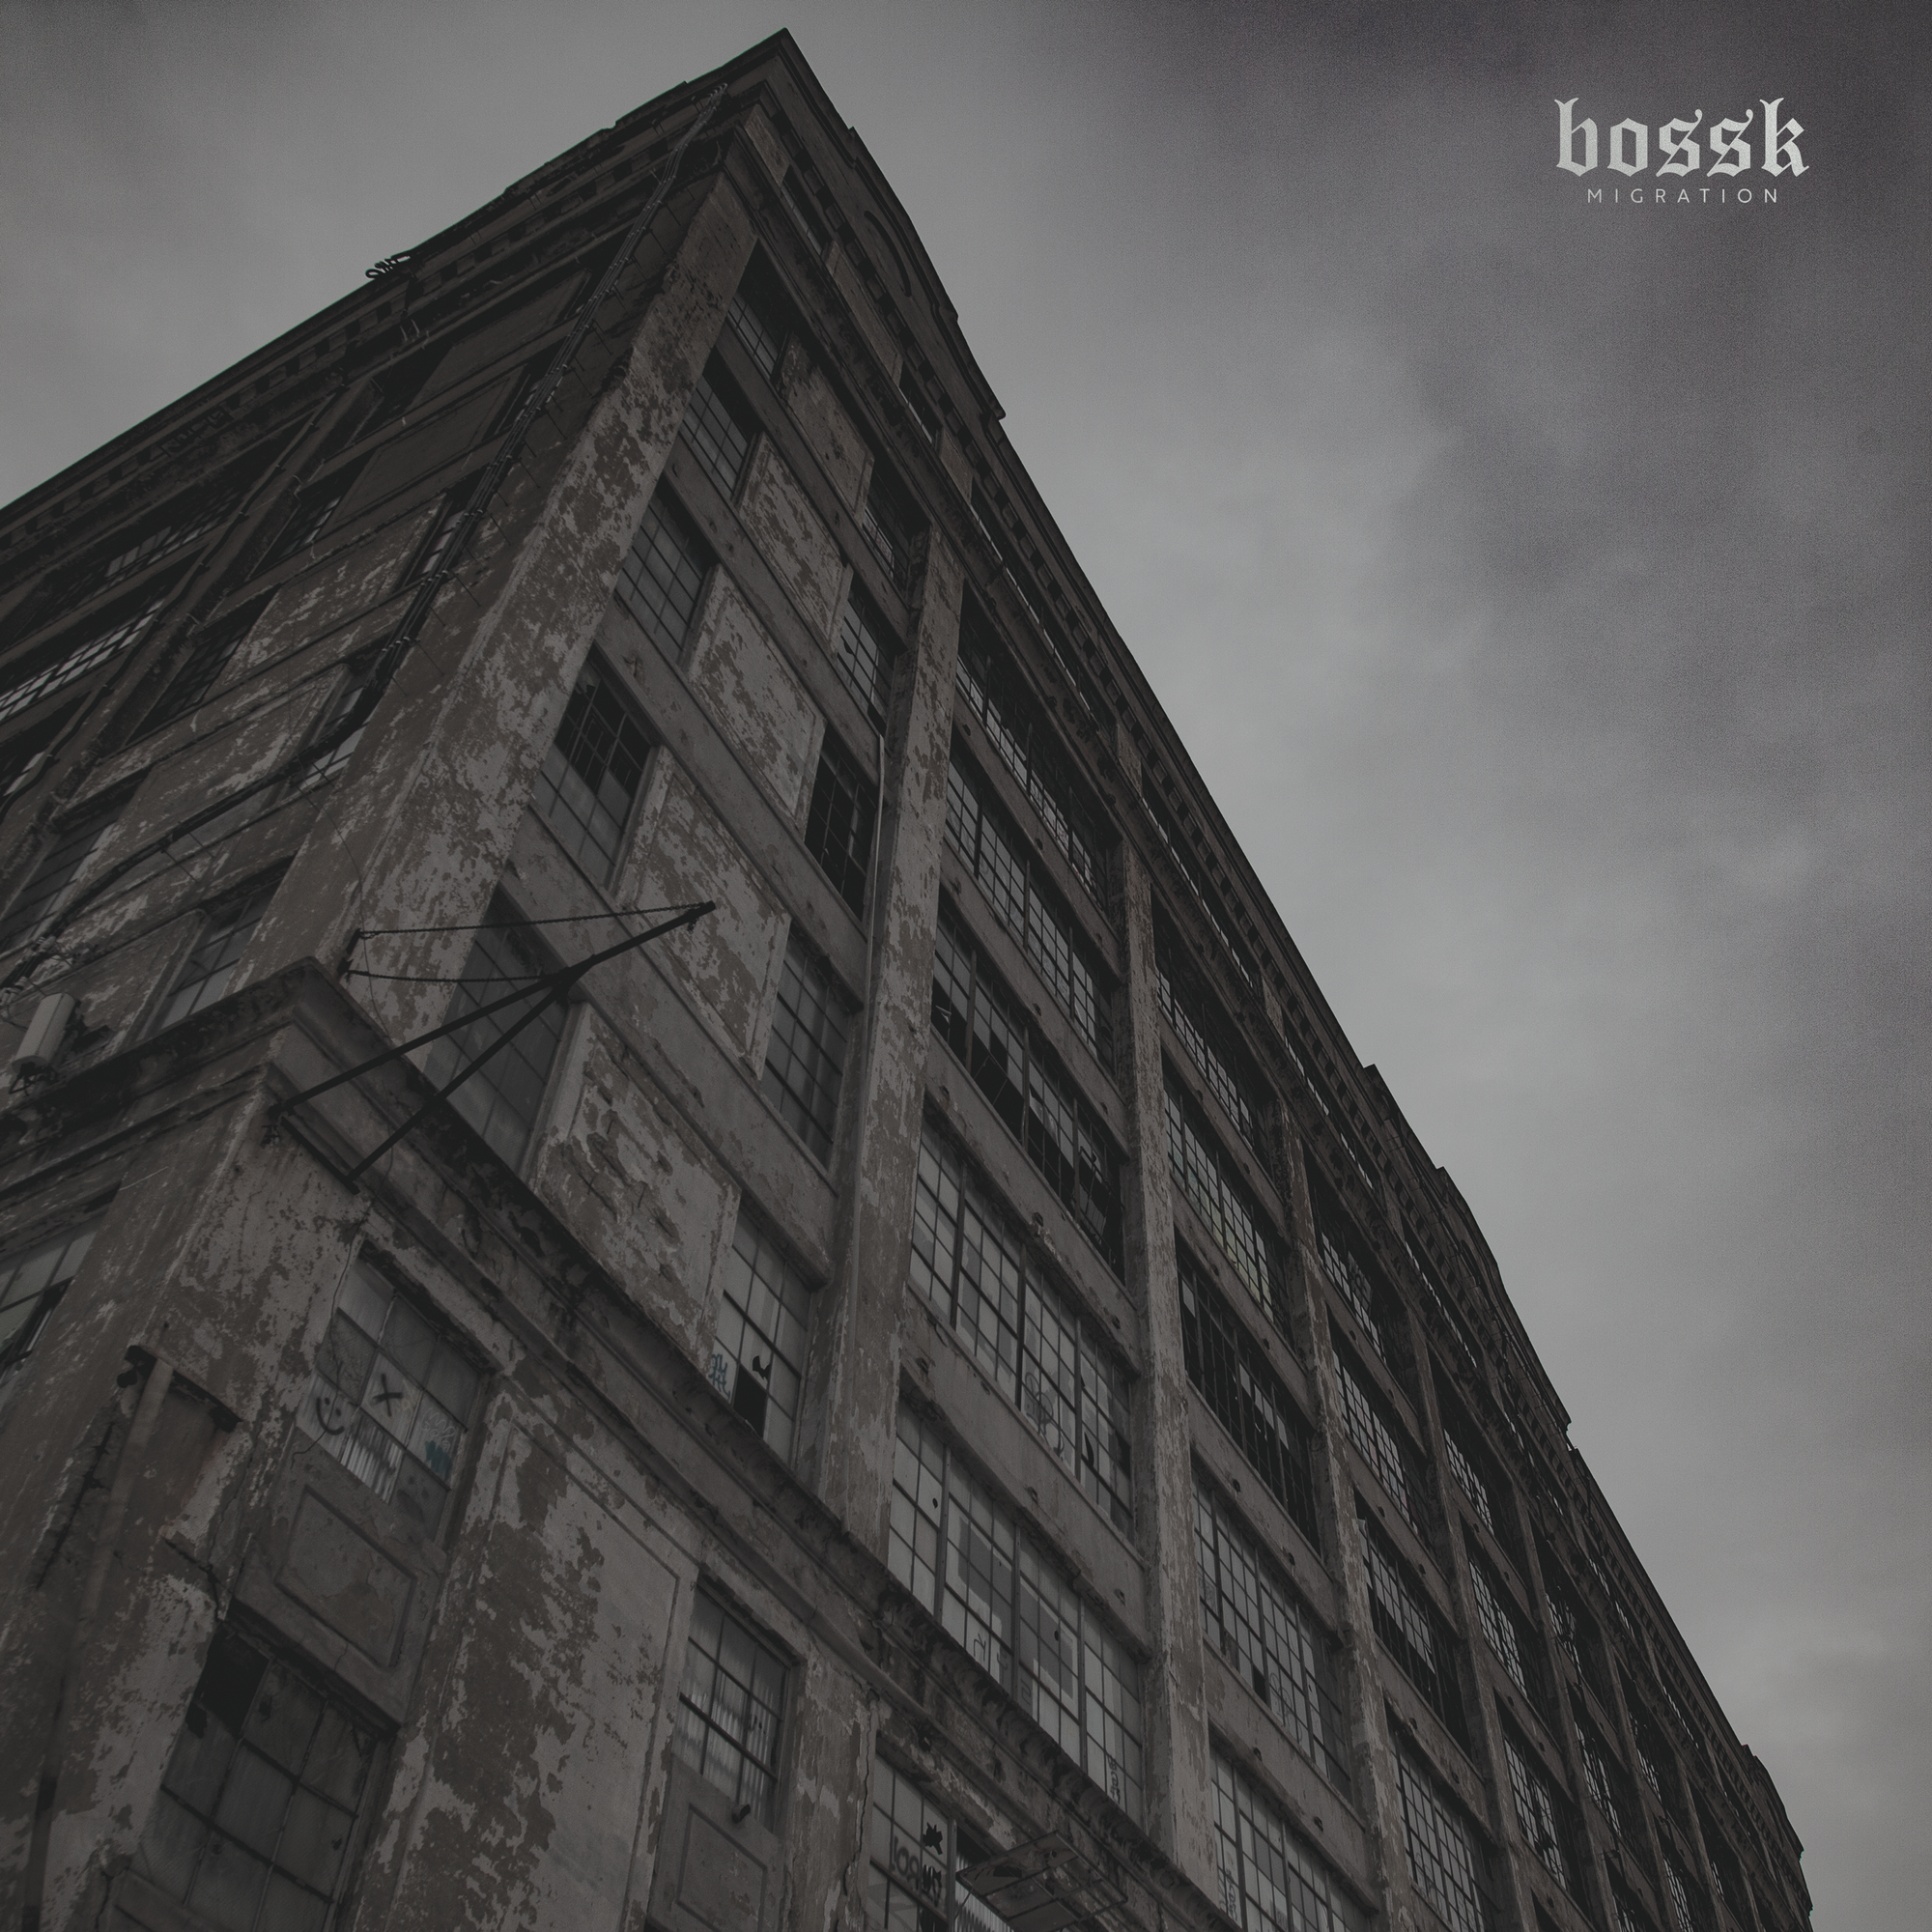 BOSSK "Migration" CD